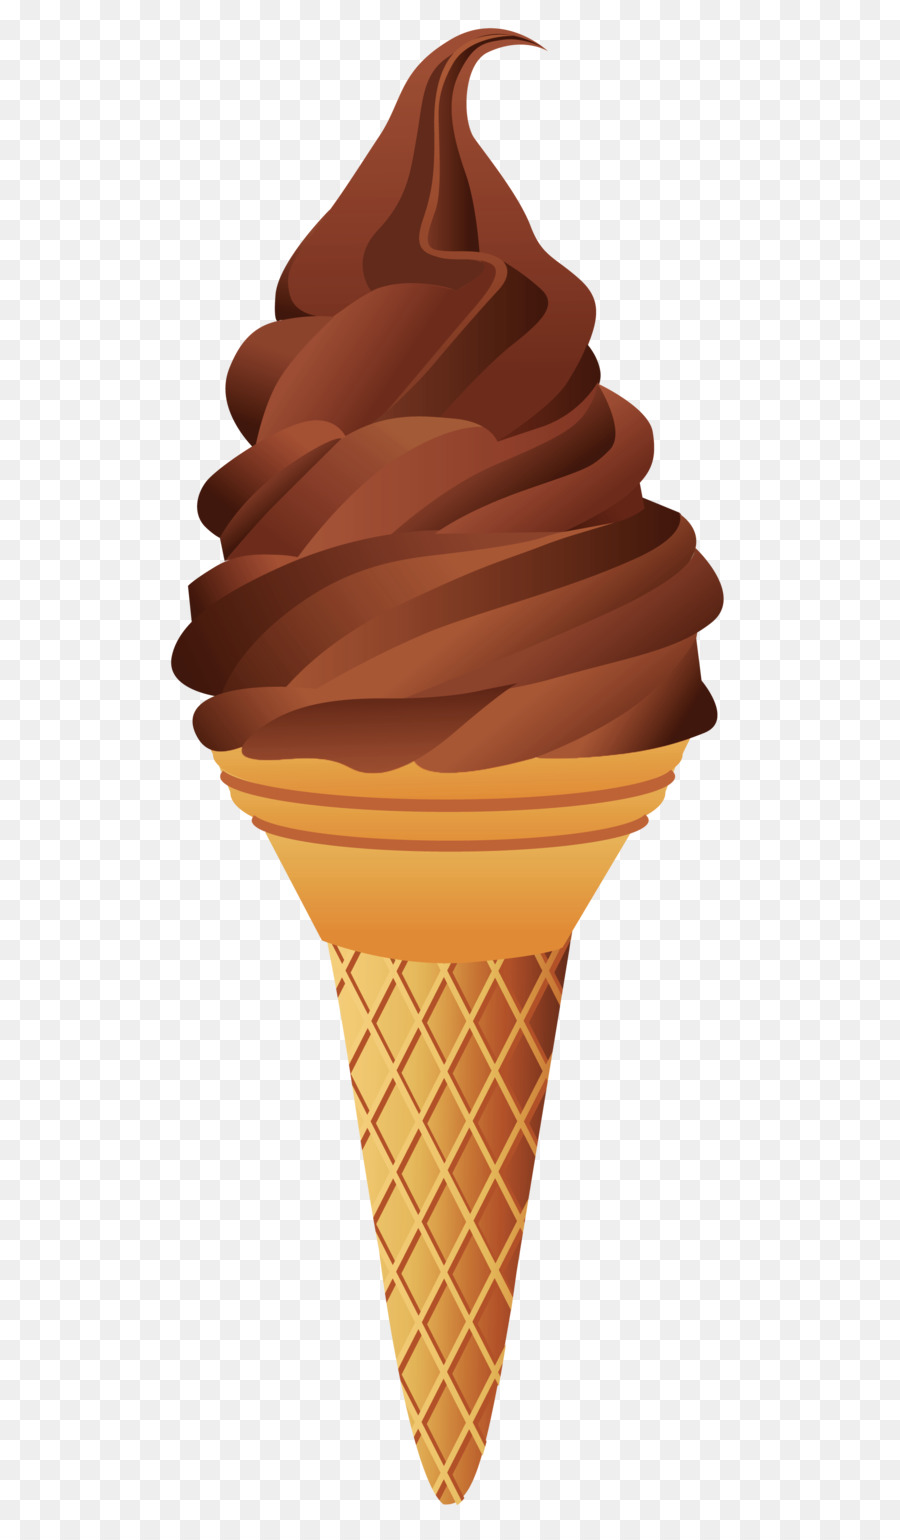 Chocolate ice cream Ice cream cone Sundae - Ice cream PNG image png download - 1515*3567 - Free Transparent Ice Cream png Download.